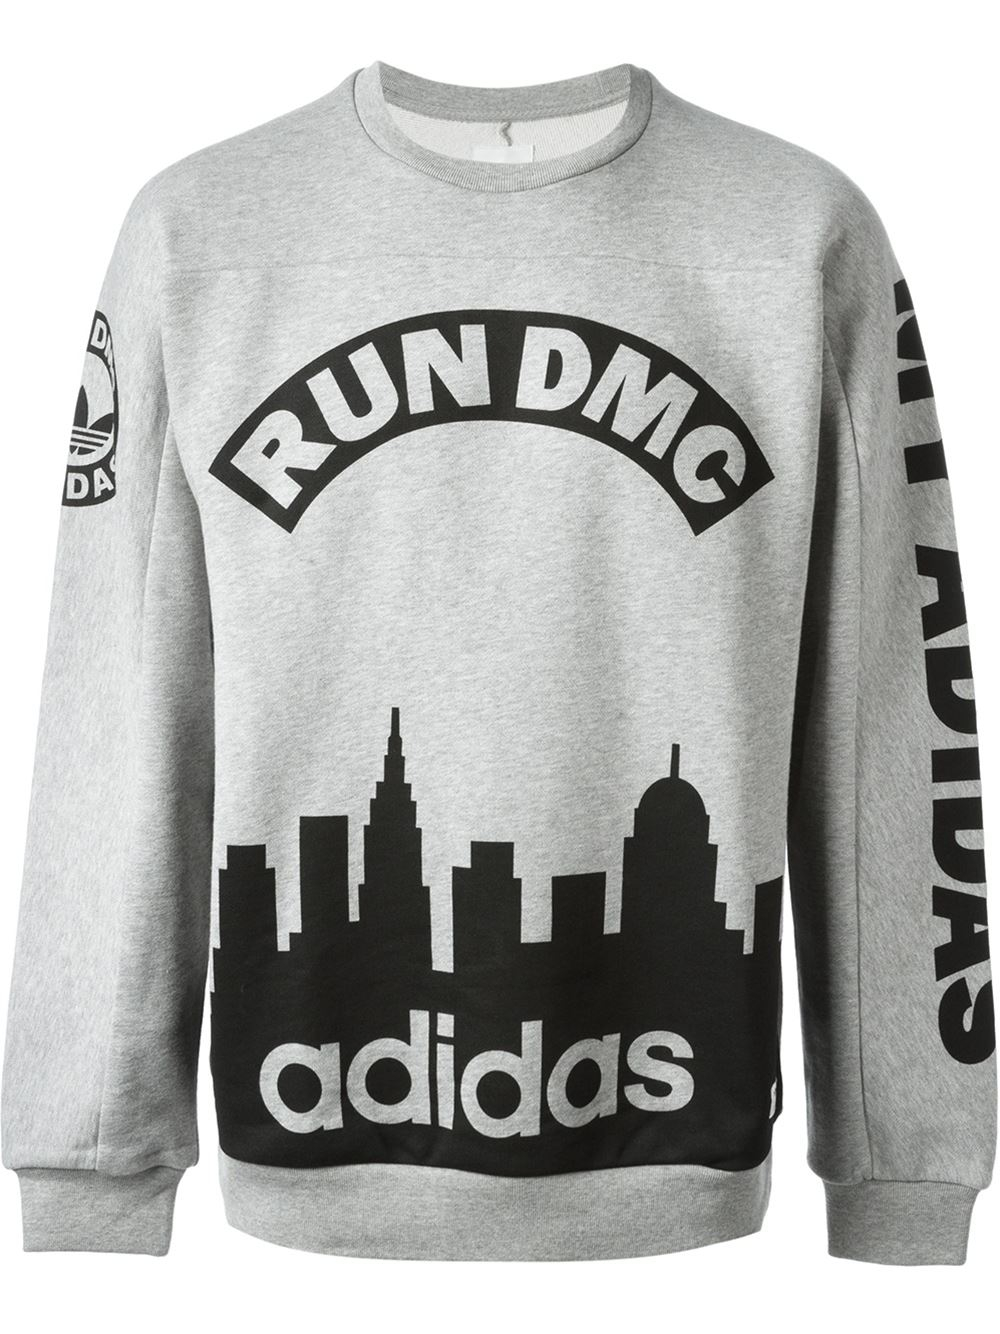 adidas Run Dmc Sweatshirt in Grey (Grey) for Men - Lyst